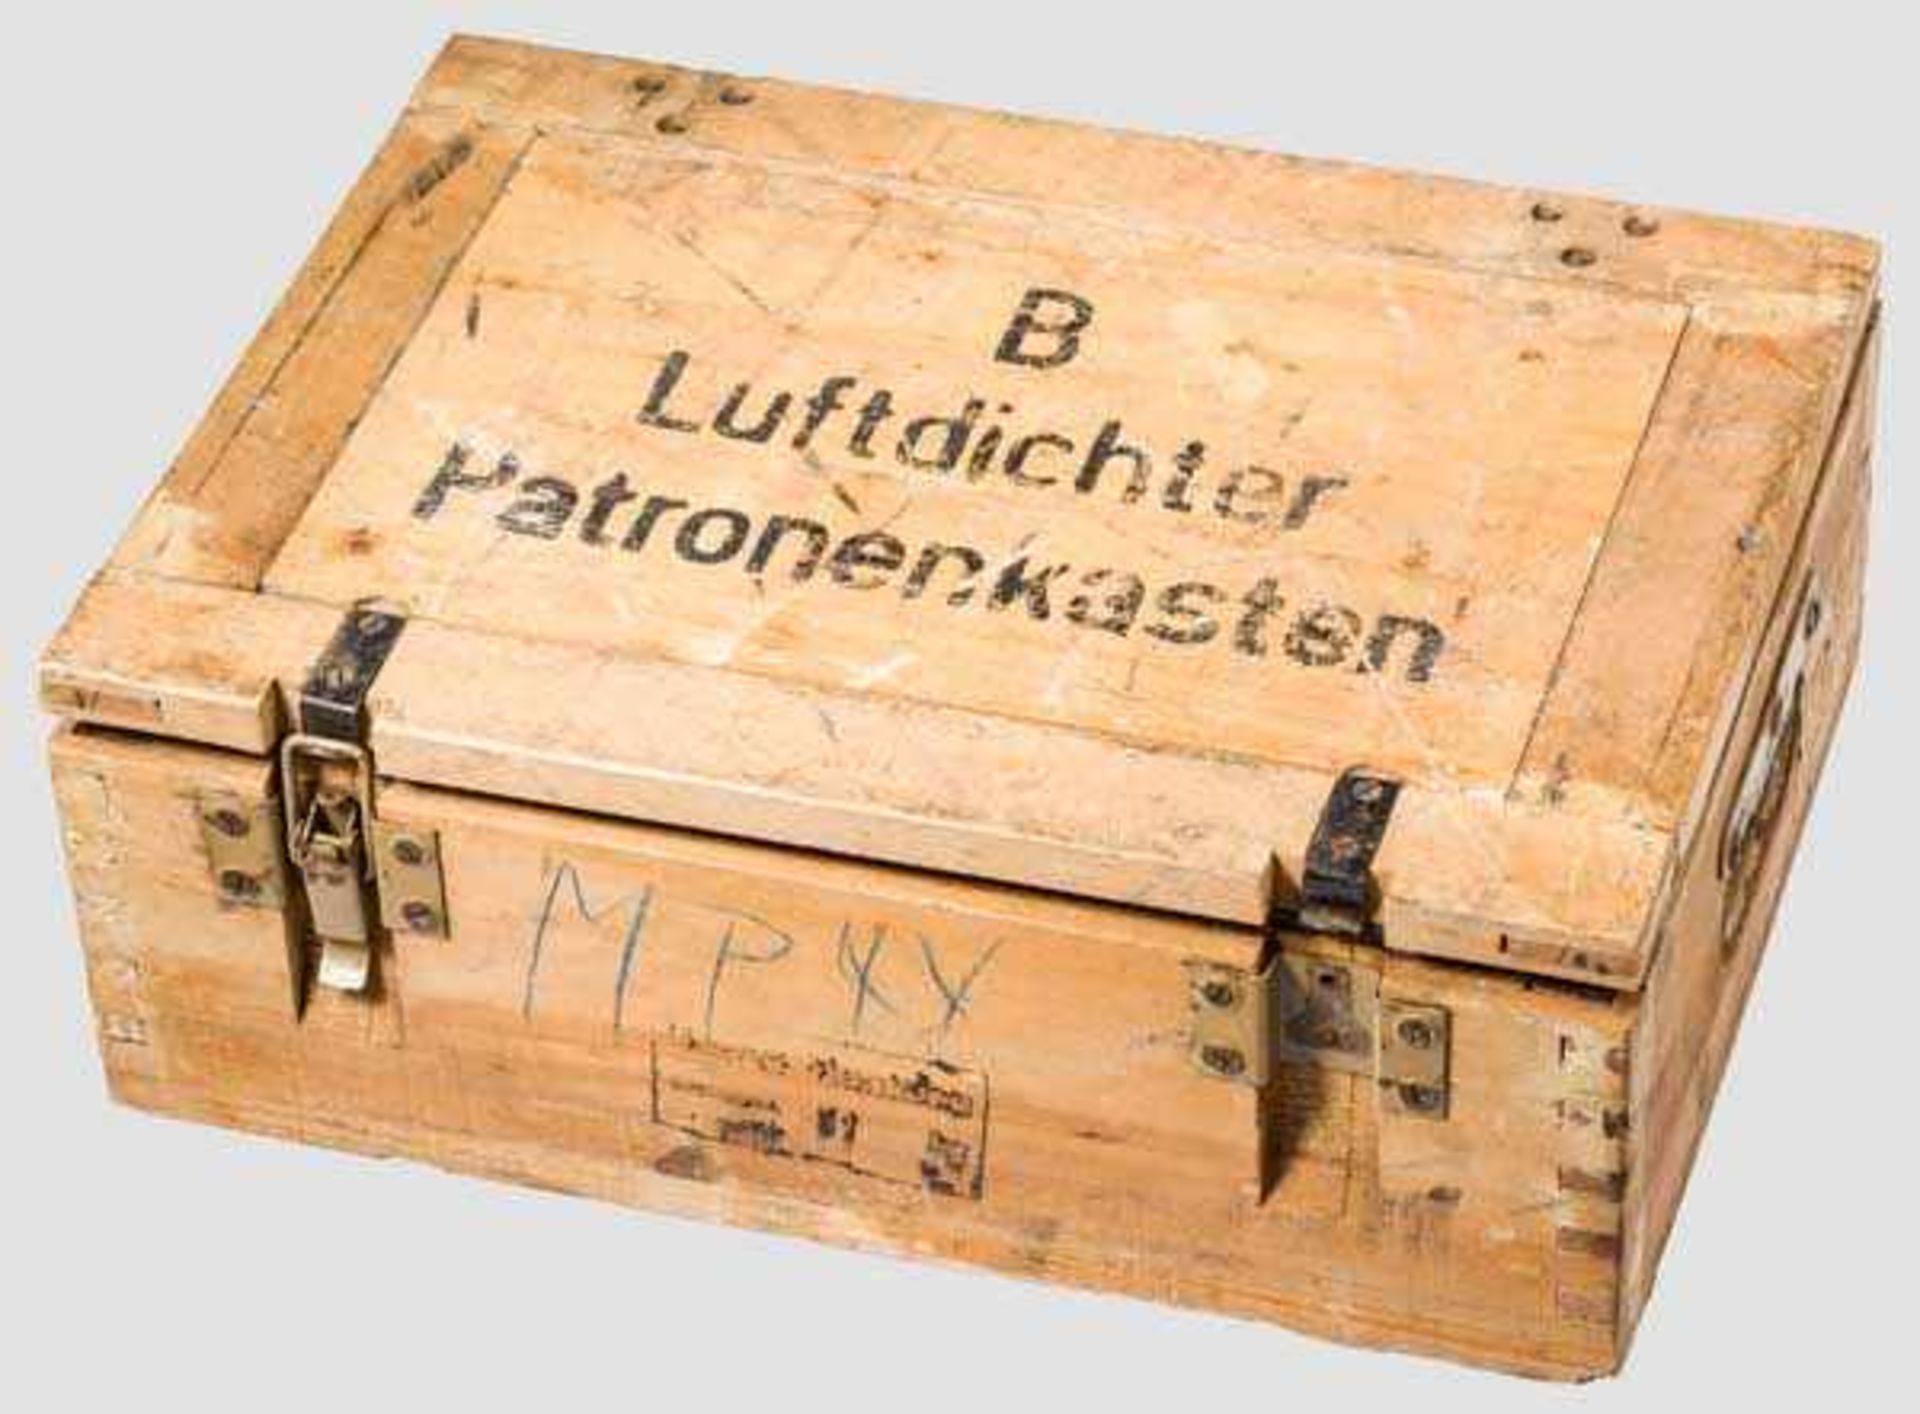 Luftdichter Patronenkasten für Pistolenpatronen 43 (8 x 33) Buchenholzkasten in den Maßen ca. 49 x